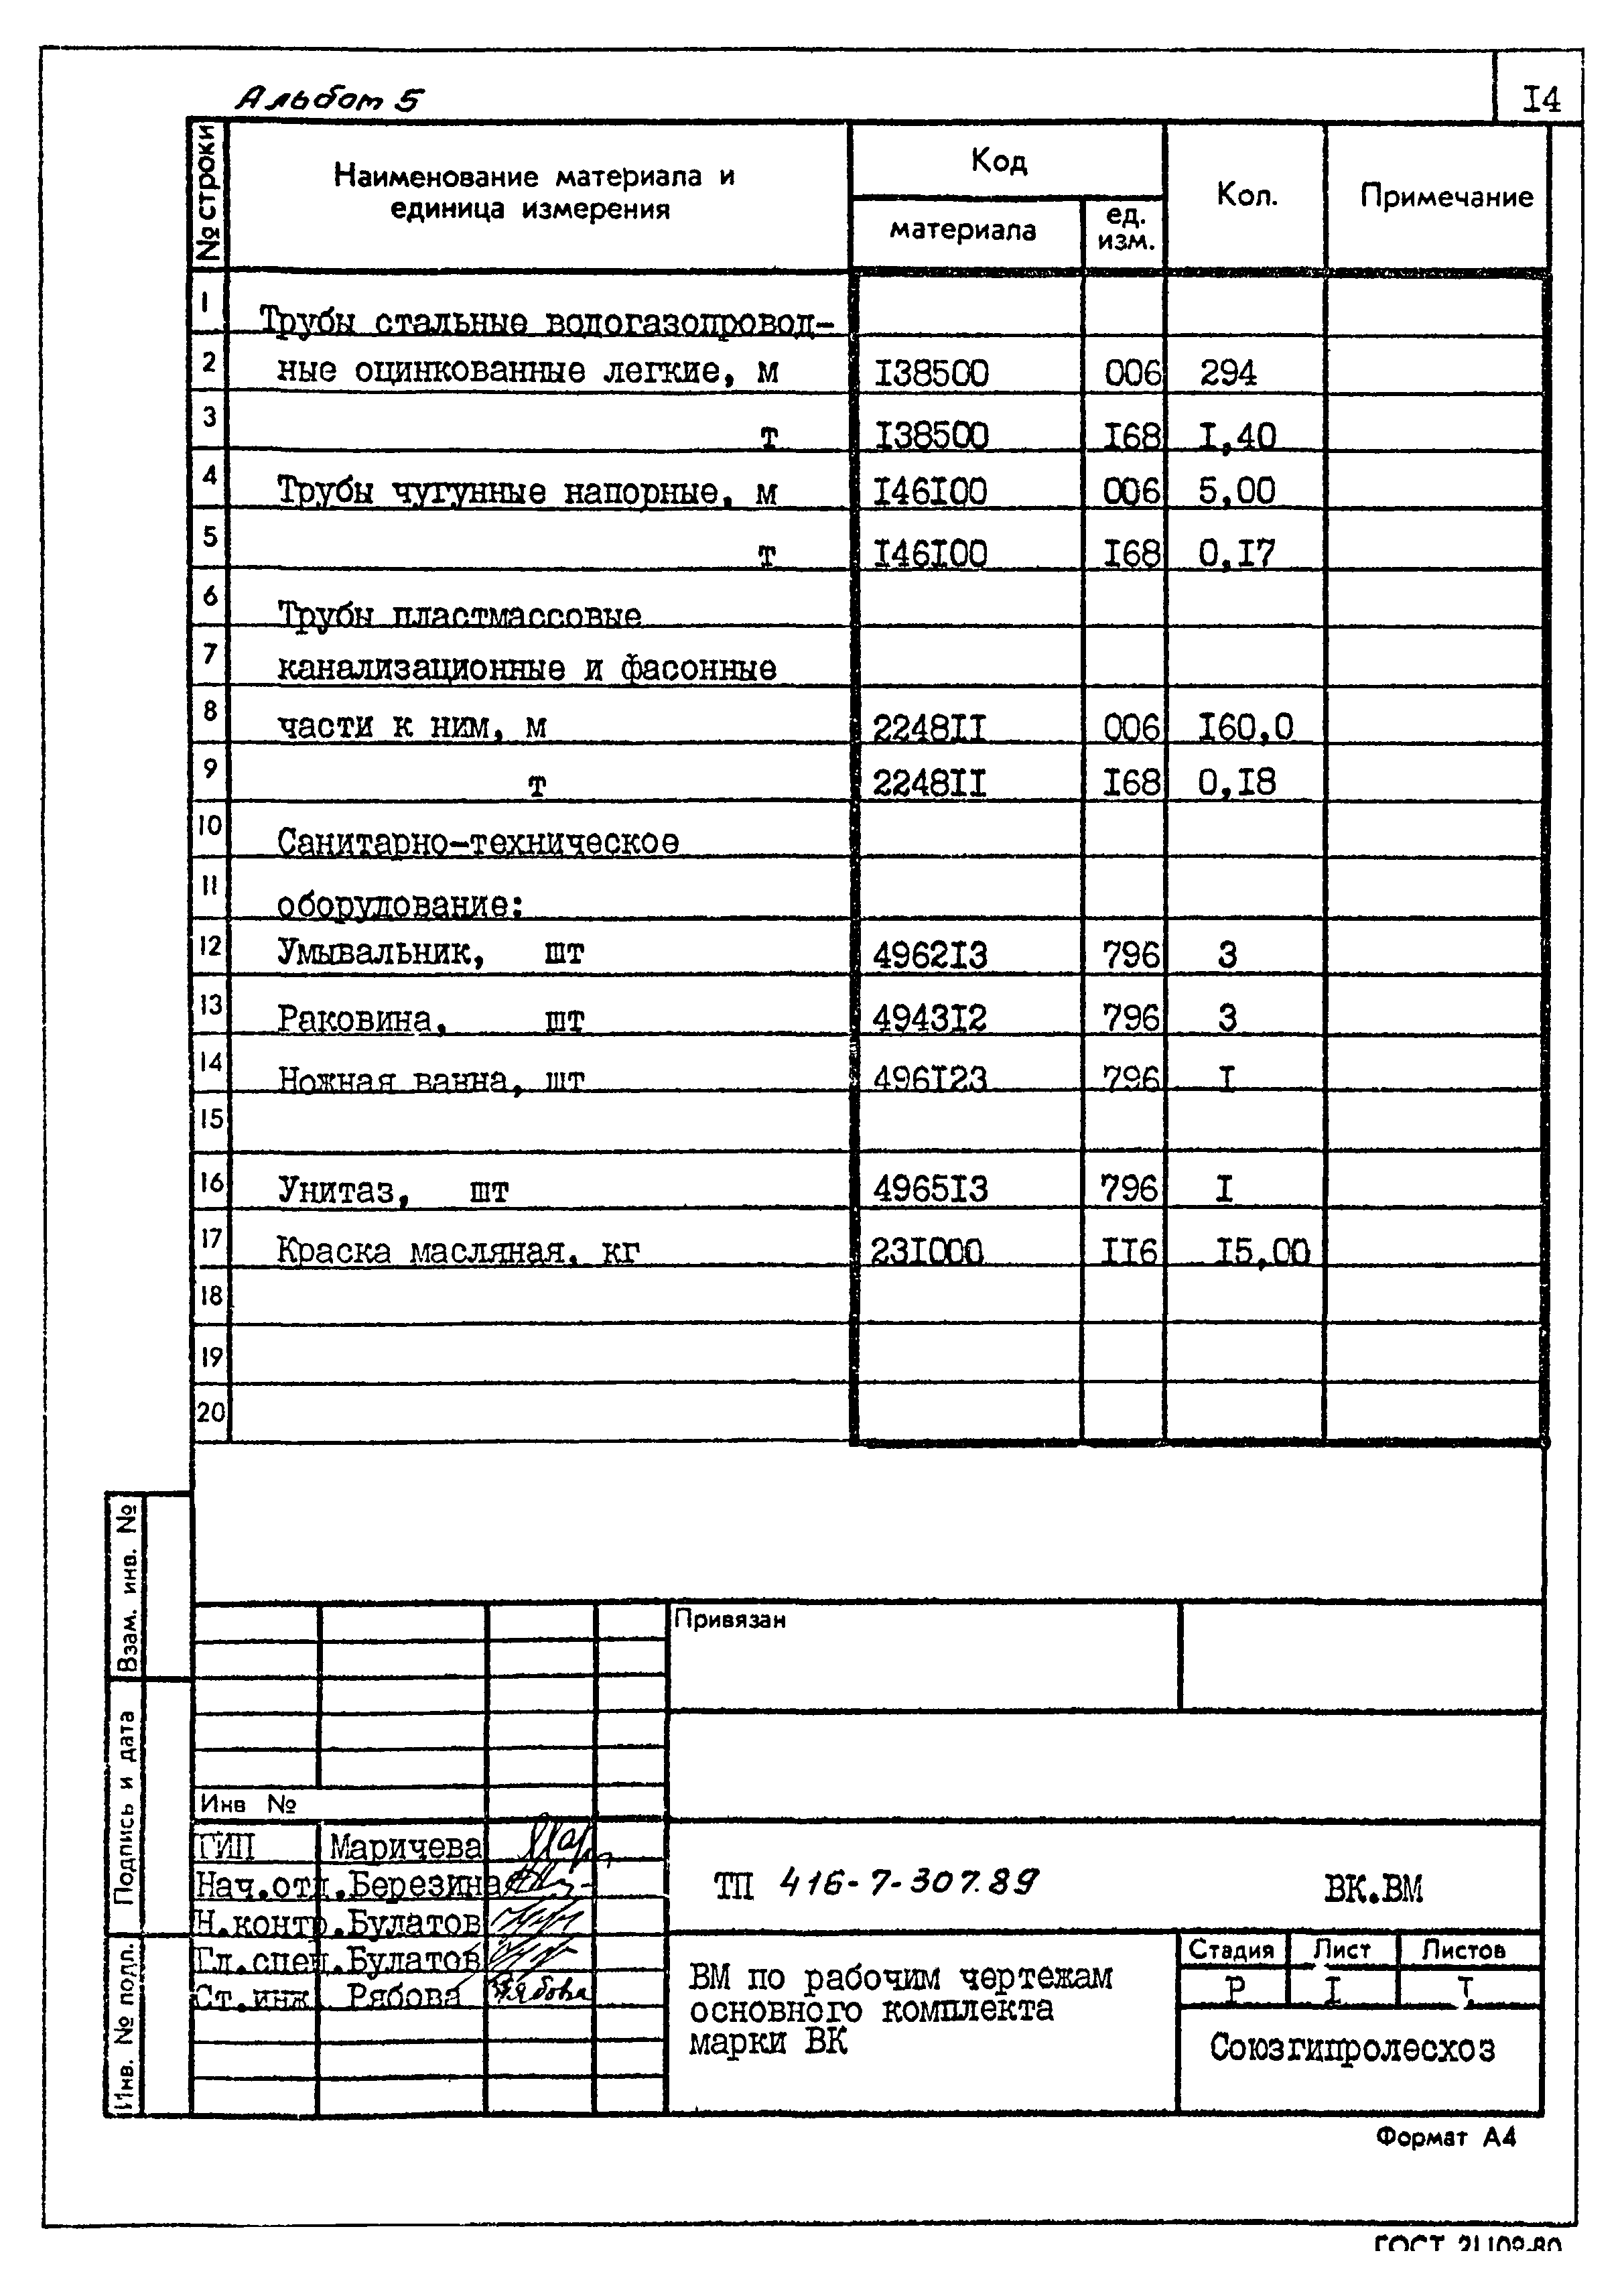 Типовой проект 416-7-307.89